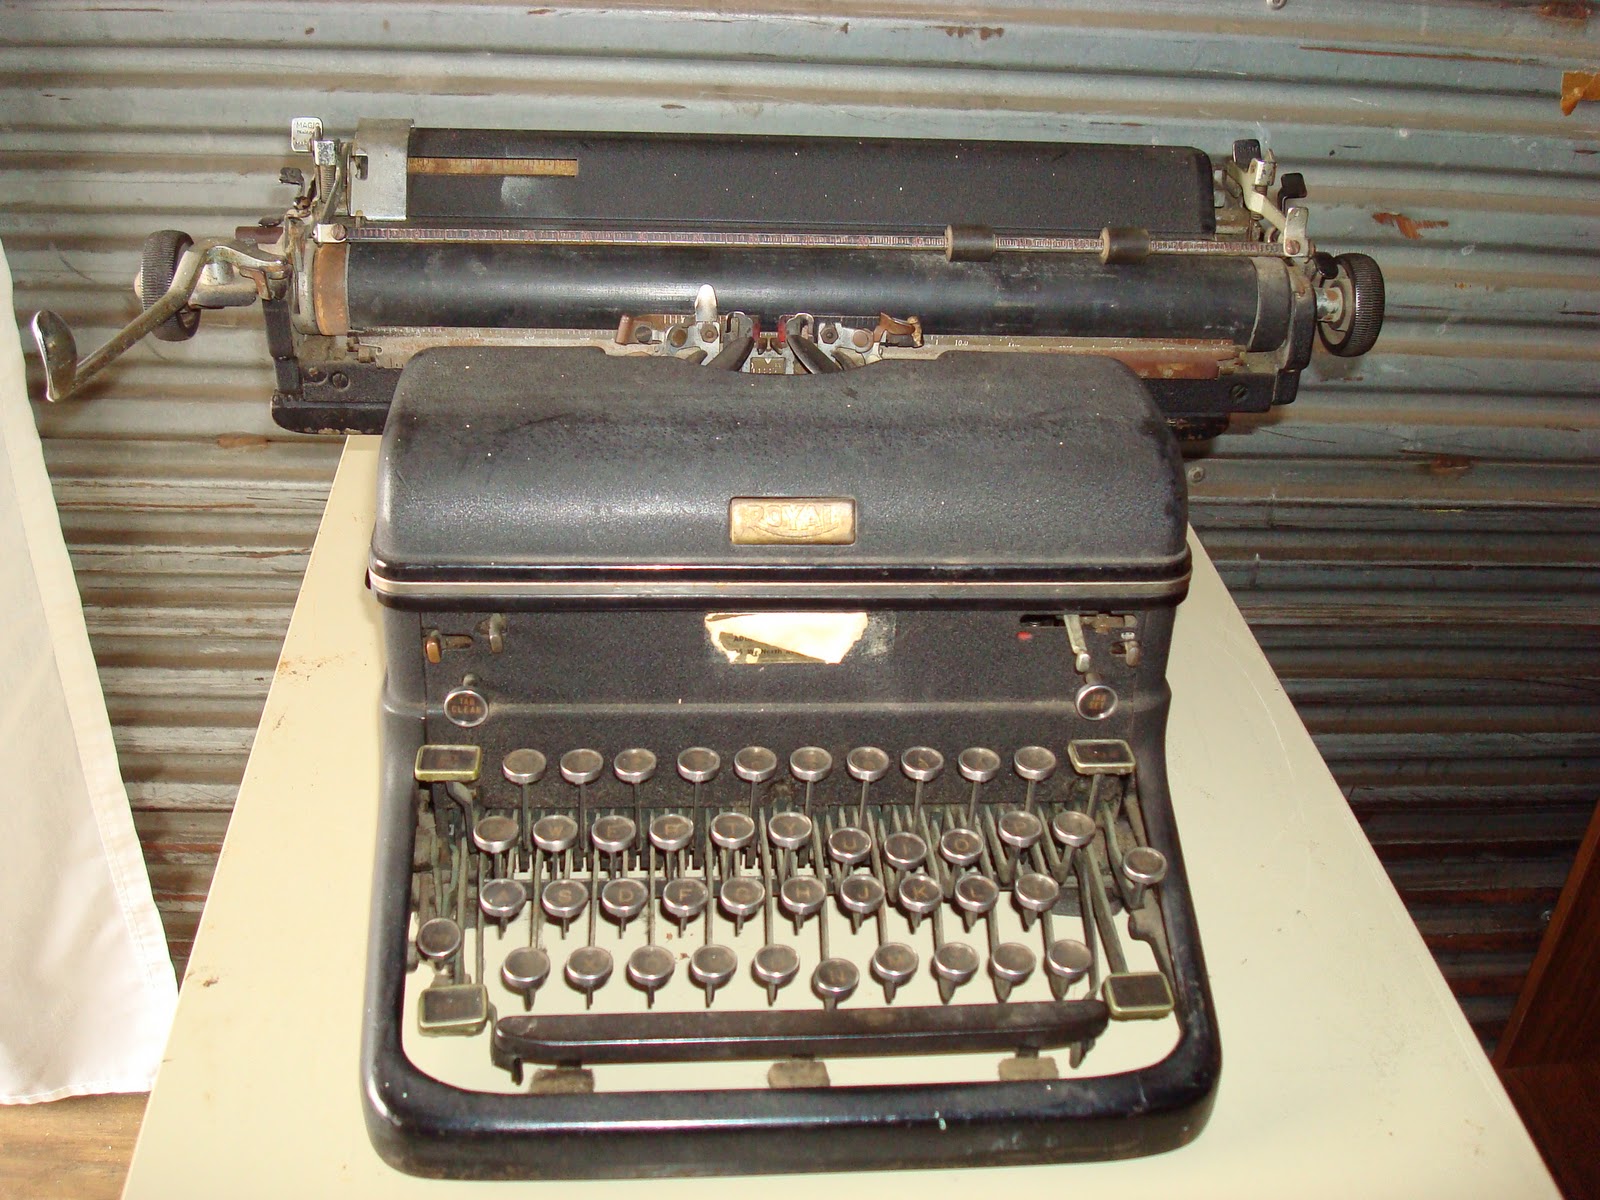 IC Church Auction - 2010: Manual Typewriter